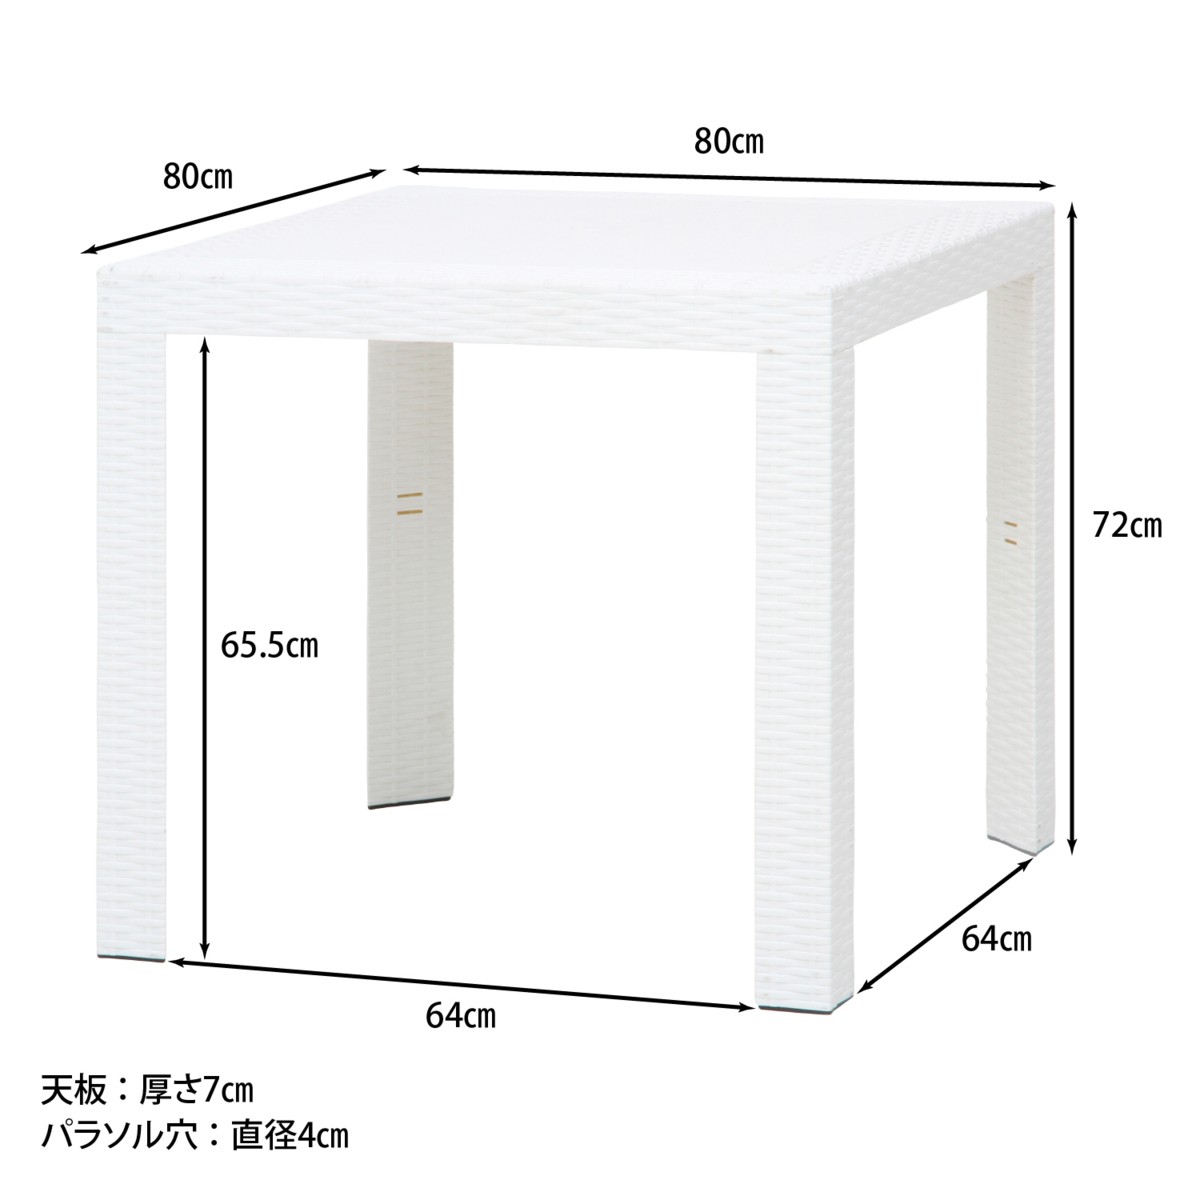 ストア送料無料/イタリア製 ガーデンテーブル ラタン風仕上げ プラスチック アウトドア デスク エクステリア 幅80cm 高さ72cm ホワイト 白/新品 その他